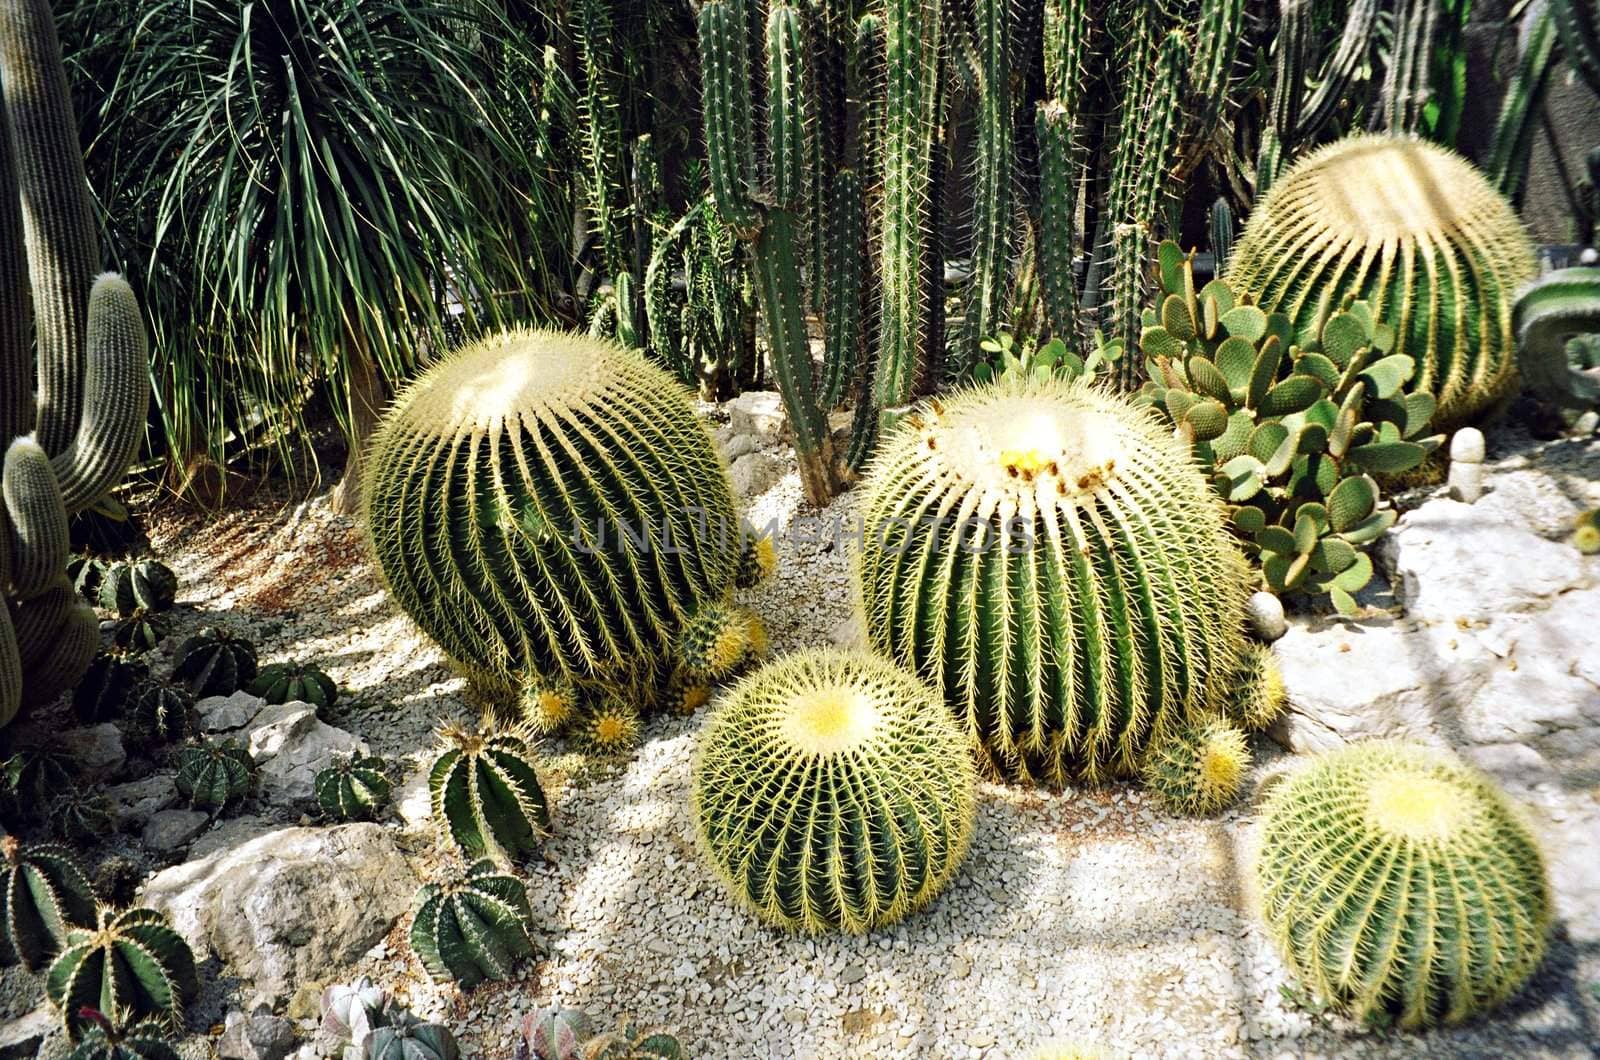 Big round cactus by Julialine